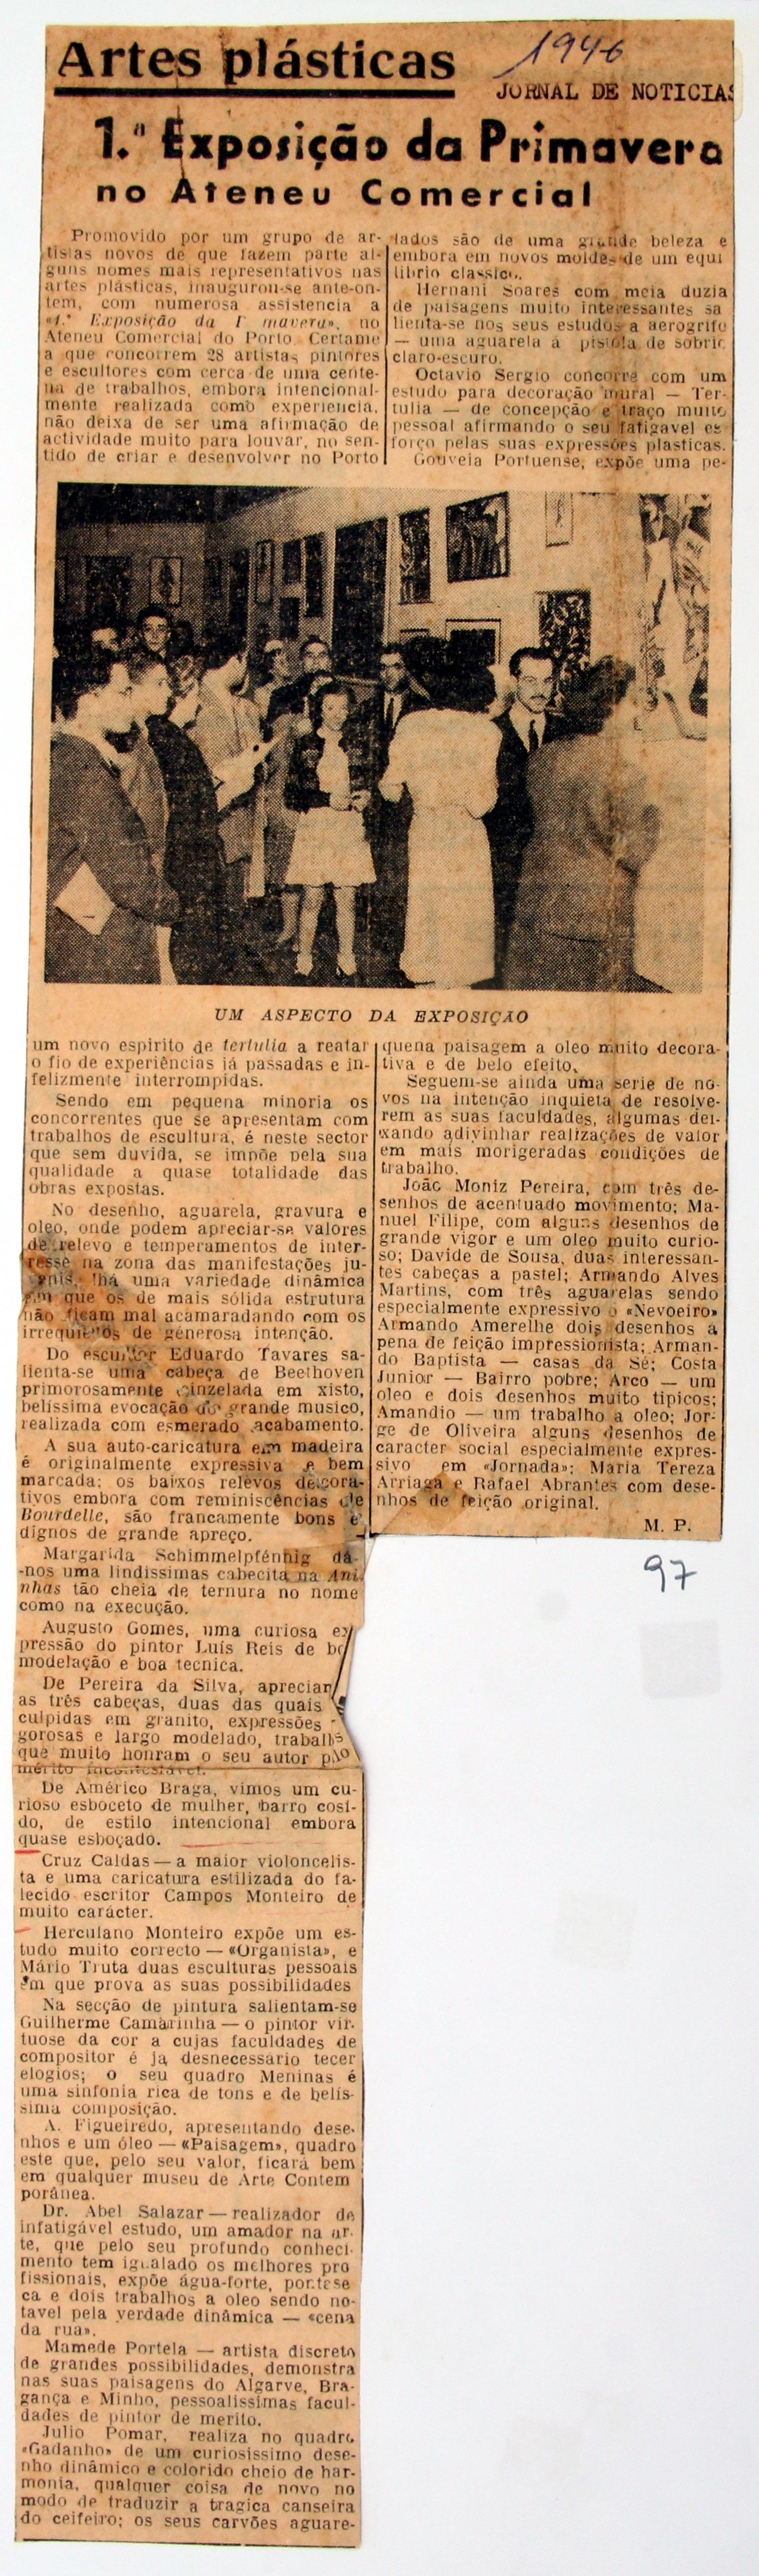 Cruz Caldas (2) : 1928-1946 : «Jornal de Notícias» : artes pláticas : 1.ª exposição da Primavera no Ateneu Comercial